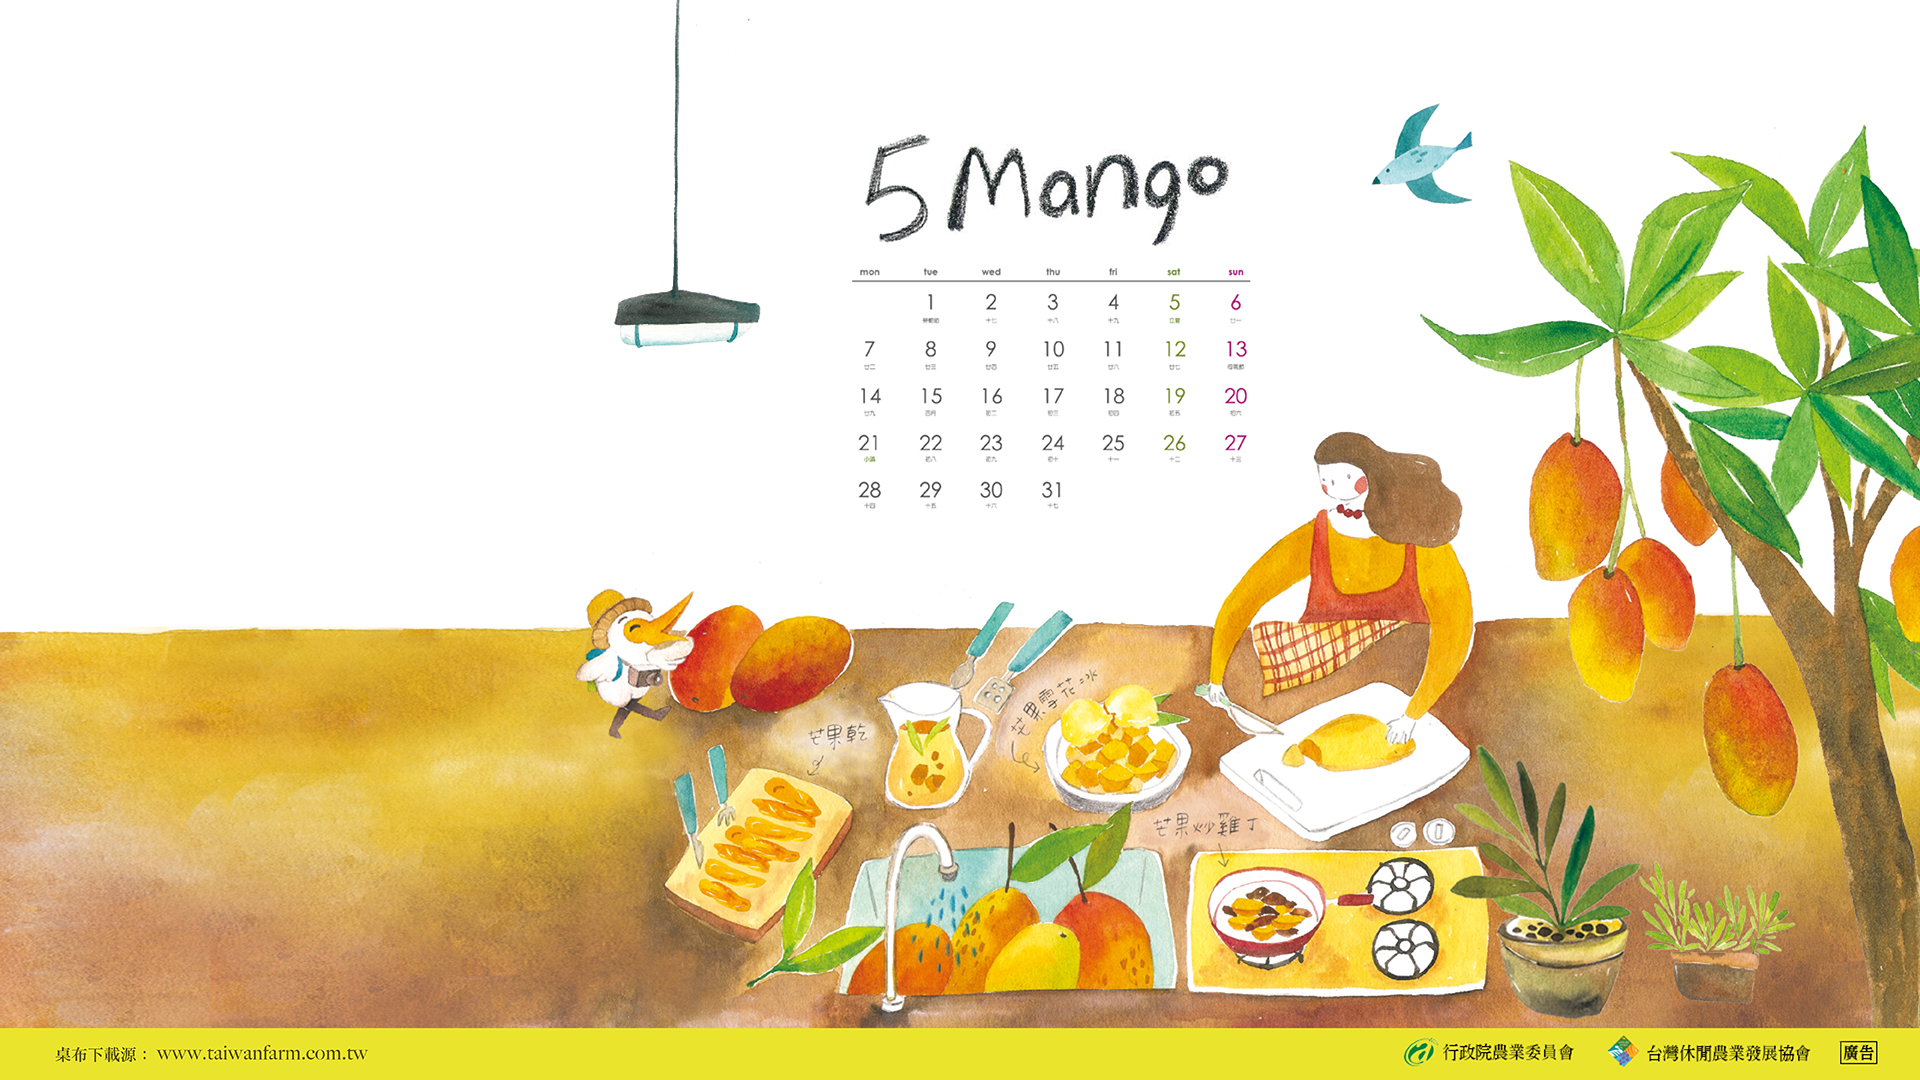 18水果旅行月曆桌布下載 5月 台灣休閒農業旅遊館